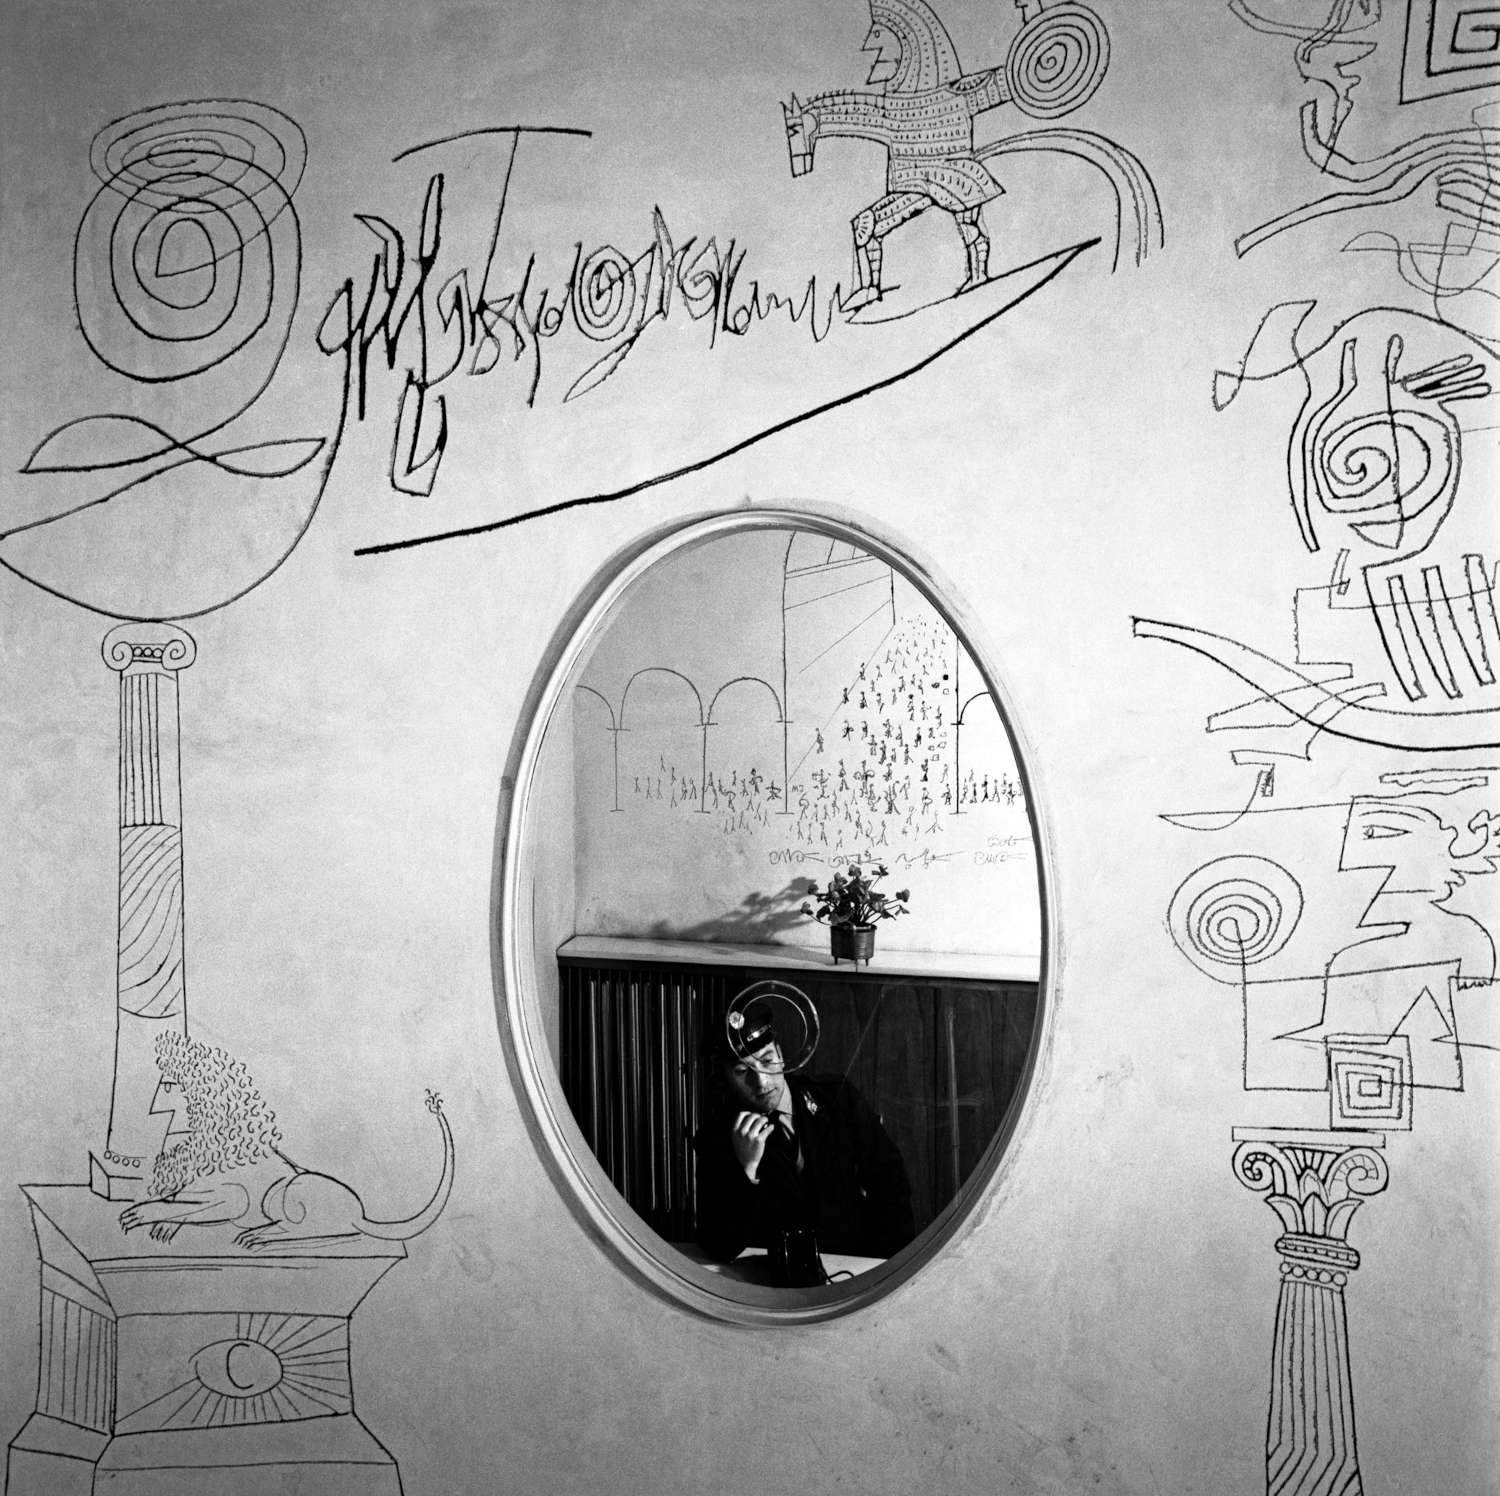 La Palazzina Mayer decorata da Saul Steinberg negli scatti di Ugo Mulas: la mostra a Torino